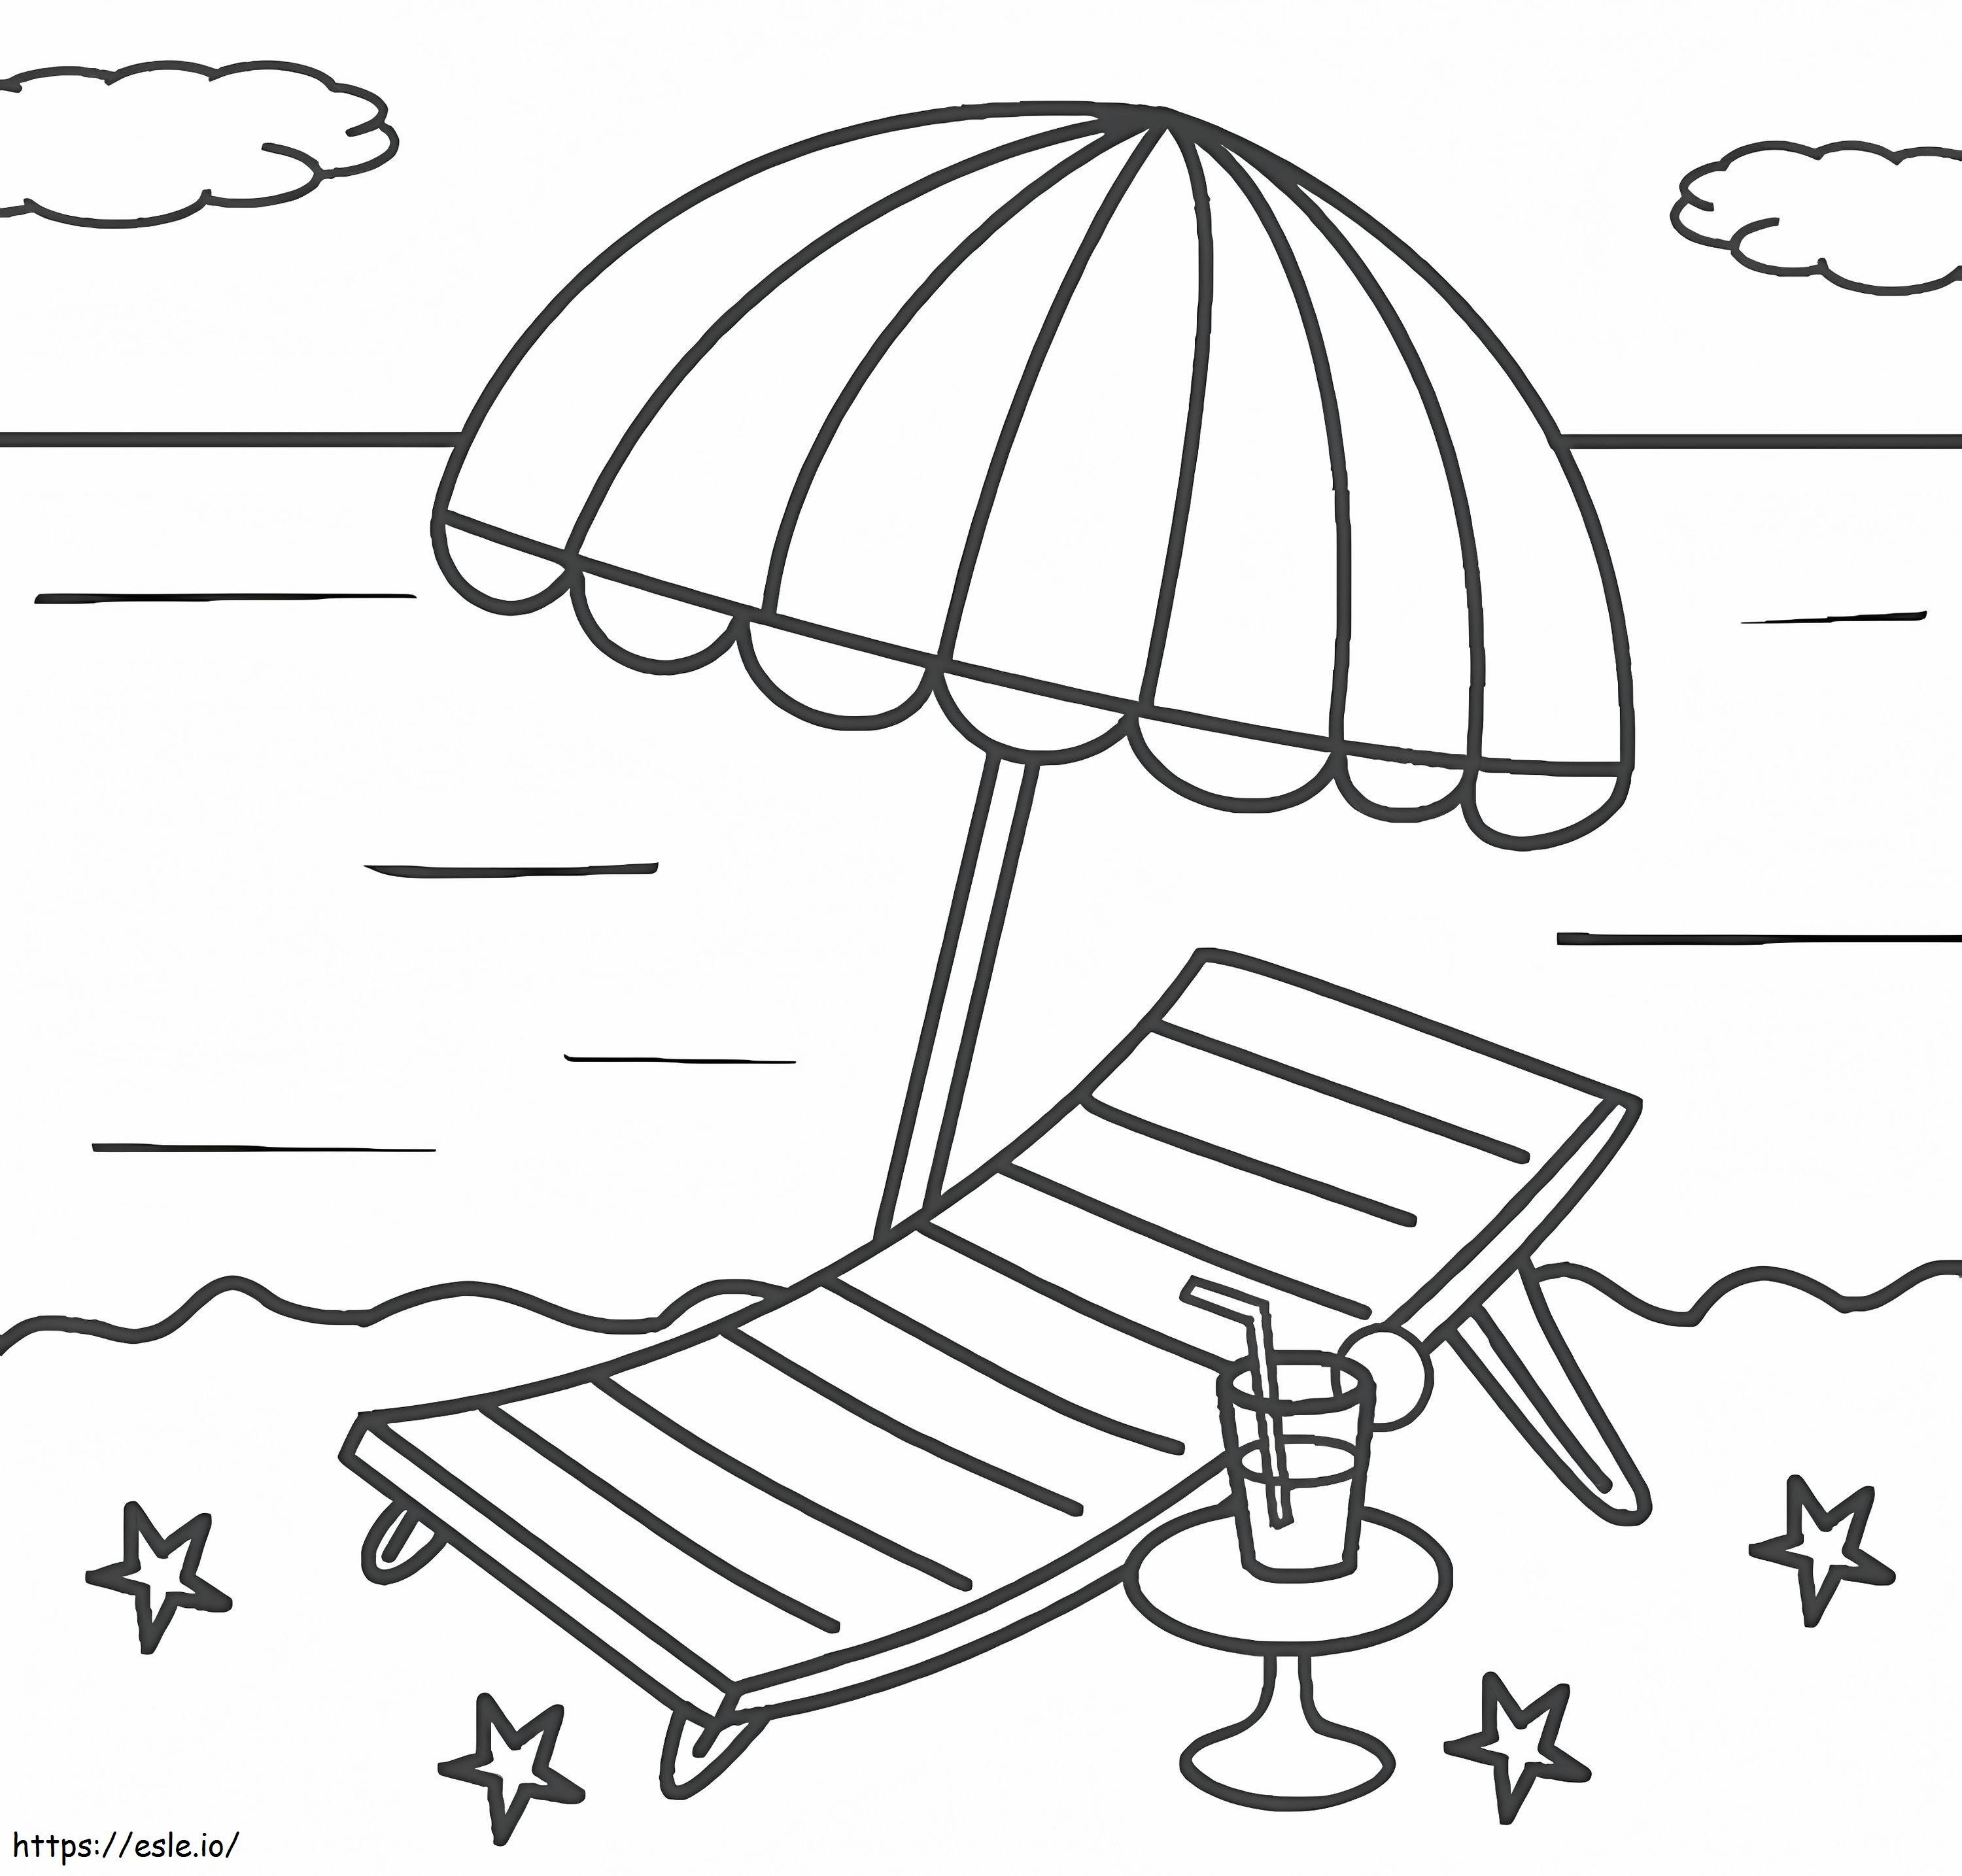 Plaj Sandalyesi ve Şemsiye boyama